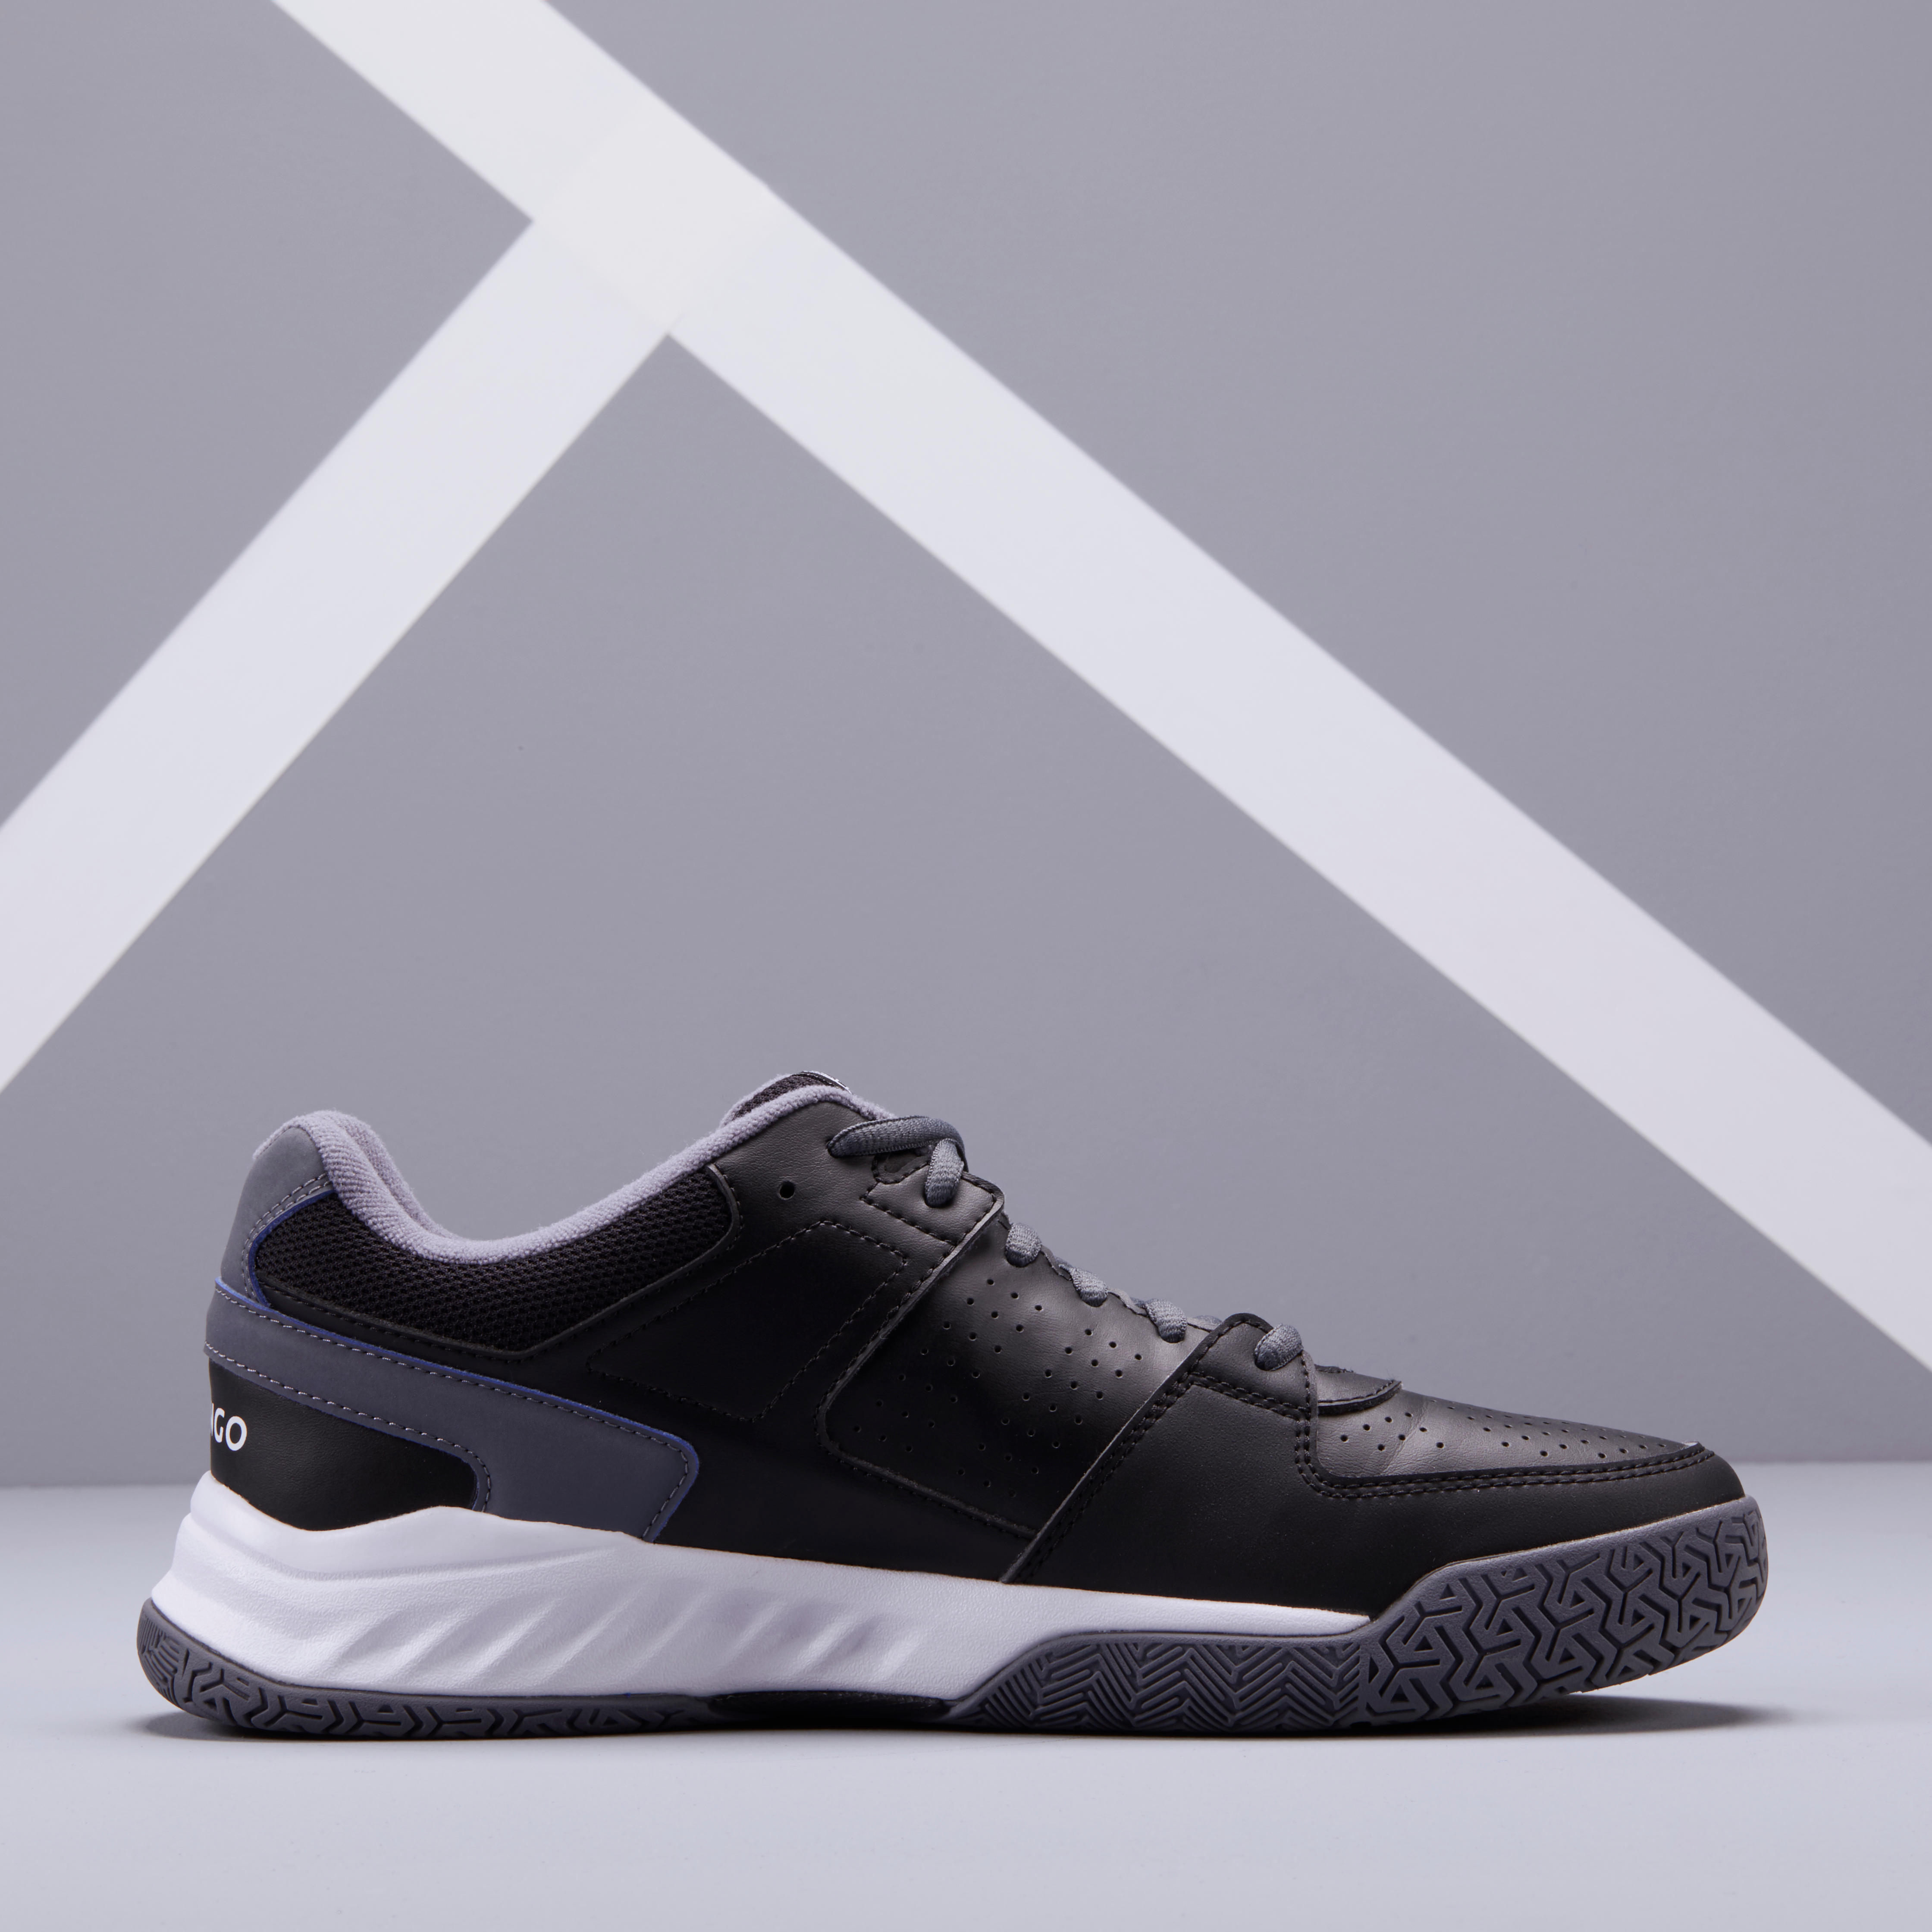 TS160 Multi-Court Tennis Shoes - Black - ARTENGO